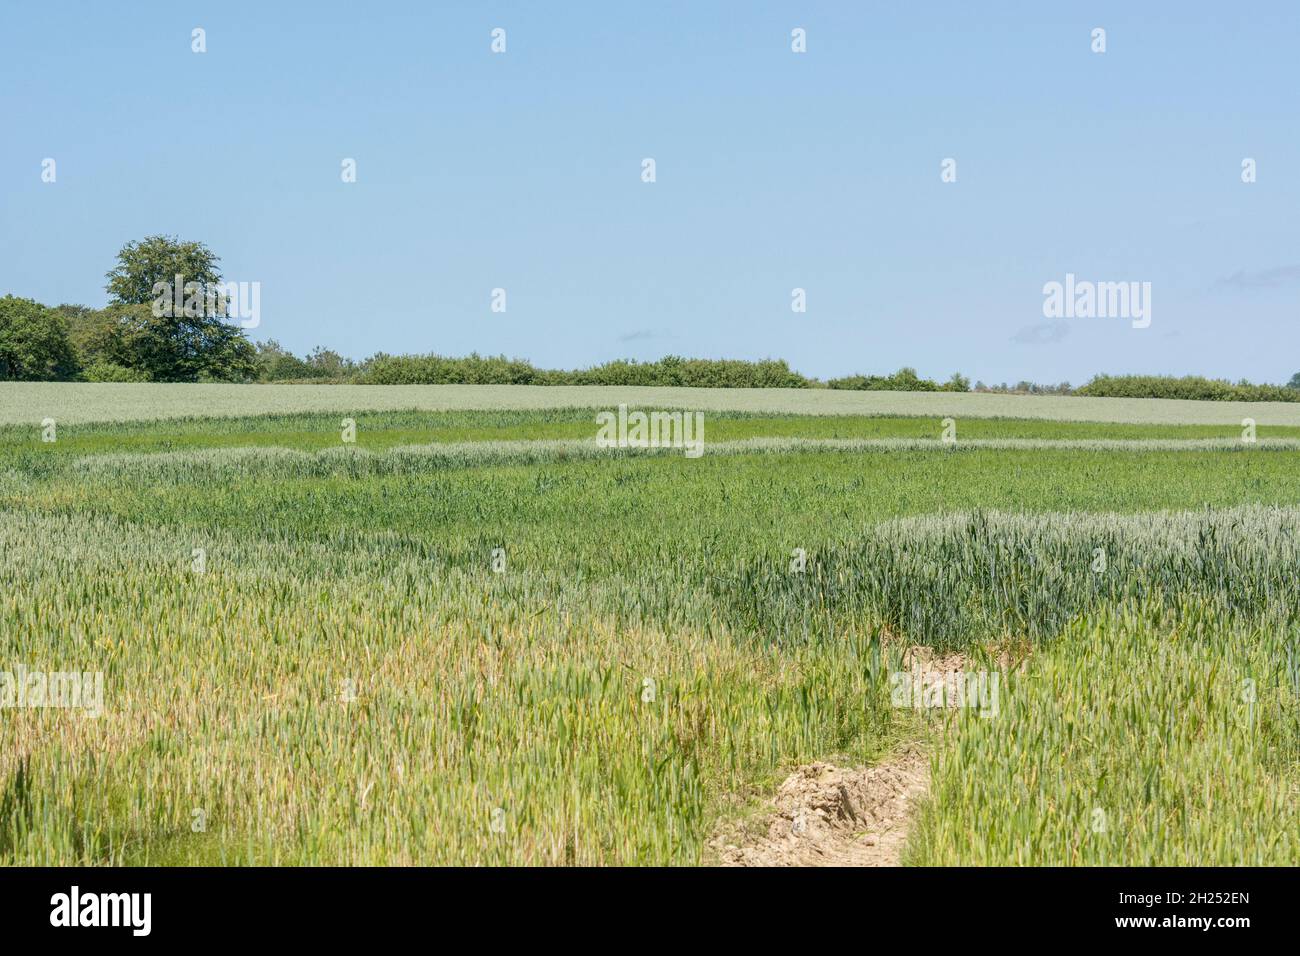 Grünes Weizenfeld im Sommer (Juni). Etwa im unteren Drittel des Bildes wird der Freischnitt allmählich weicher. Für Ernährungssicherheit / Anbau von Lebensmitteln, Triticum. Stockfoto